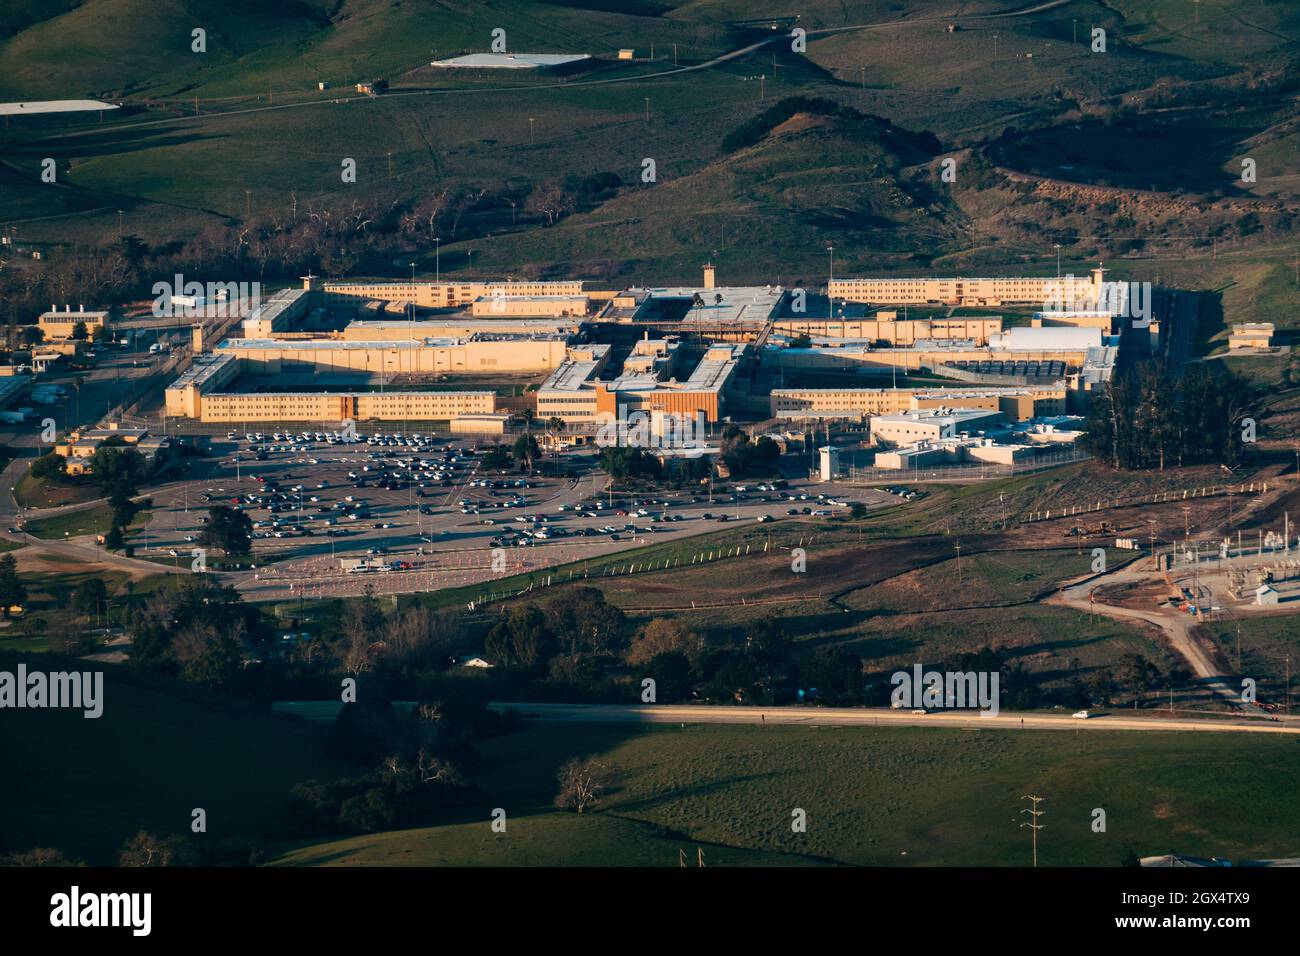 Vue aérienne de la prison California Men's Colony de San Luis Obispo Banque D'Images